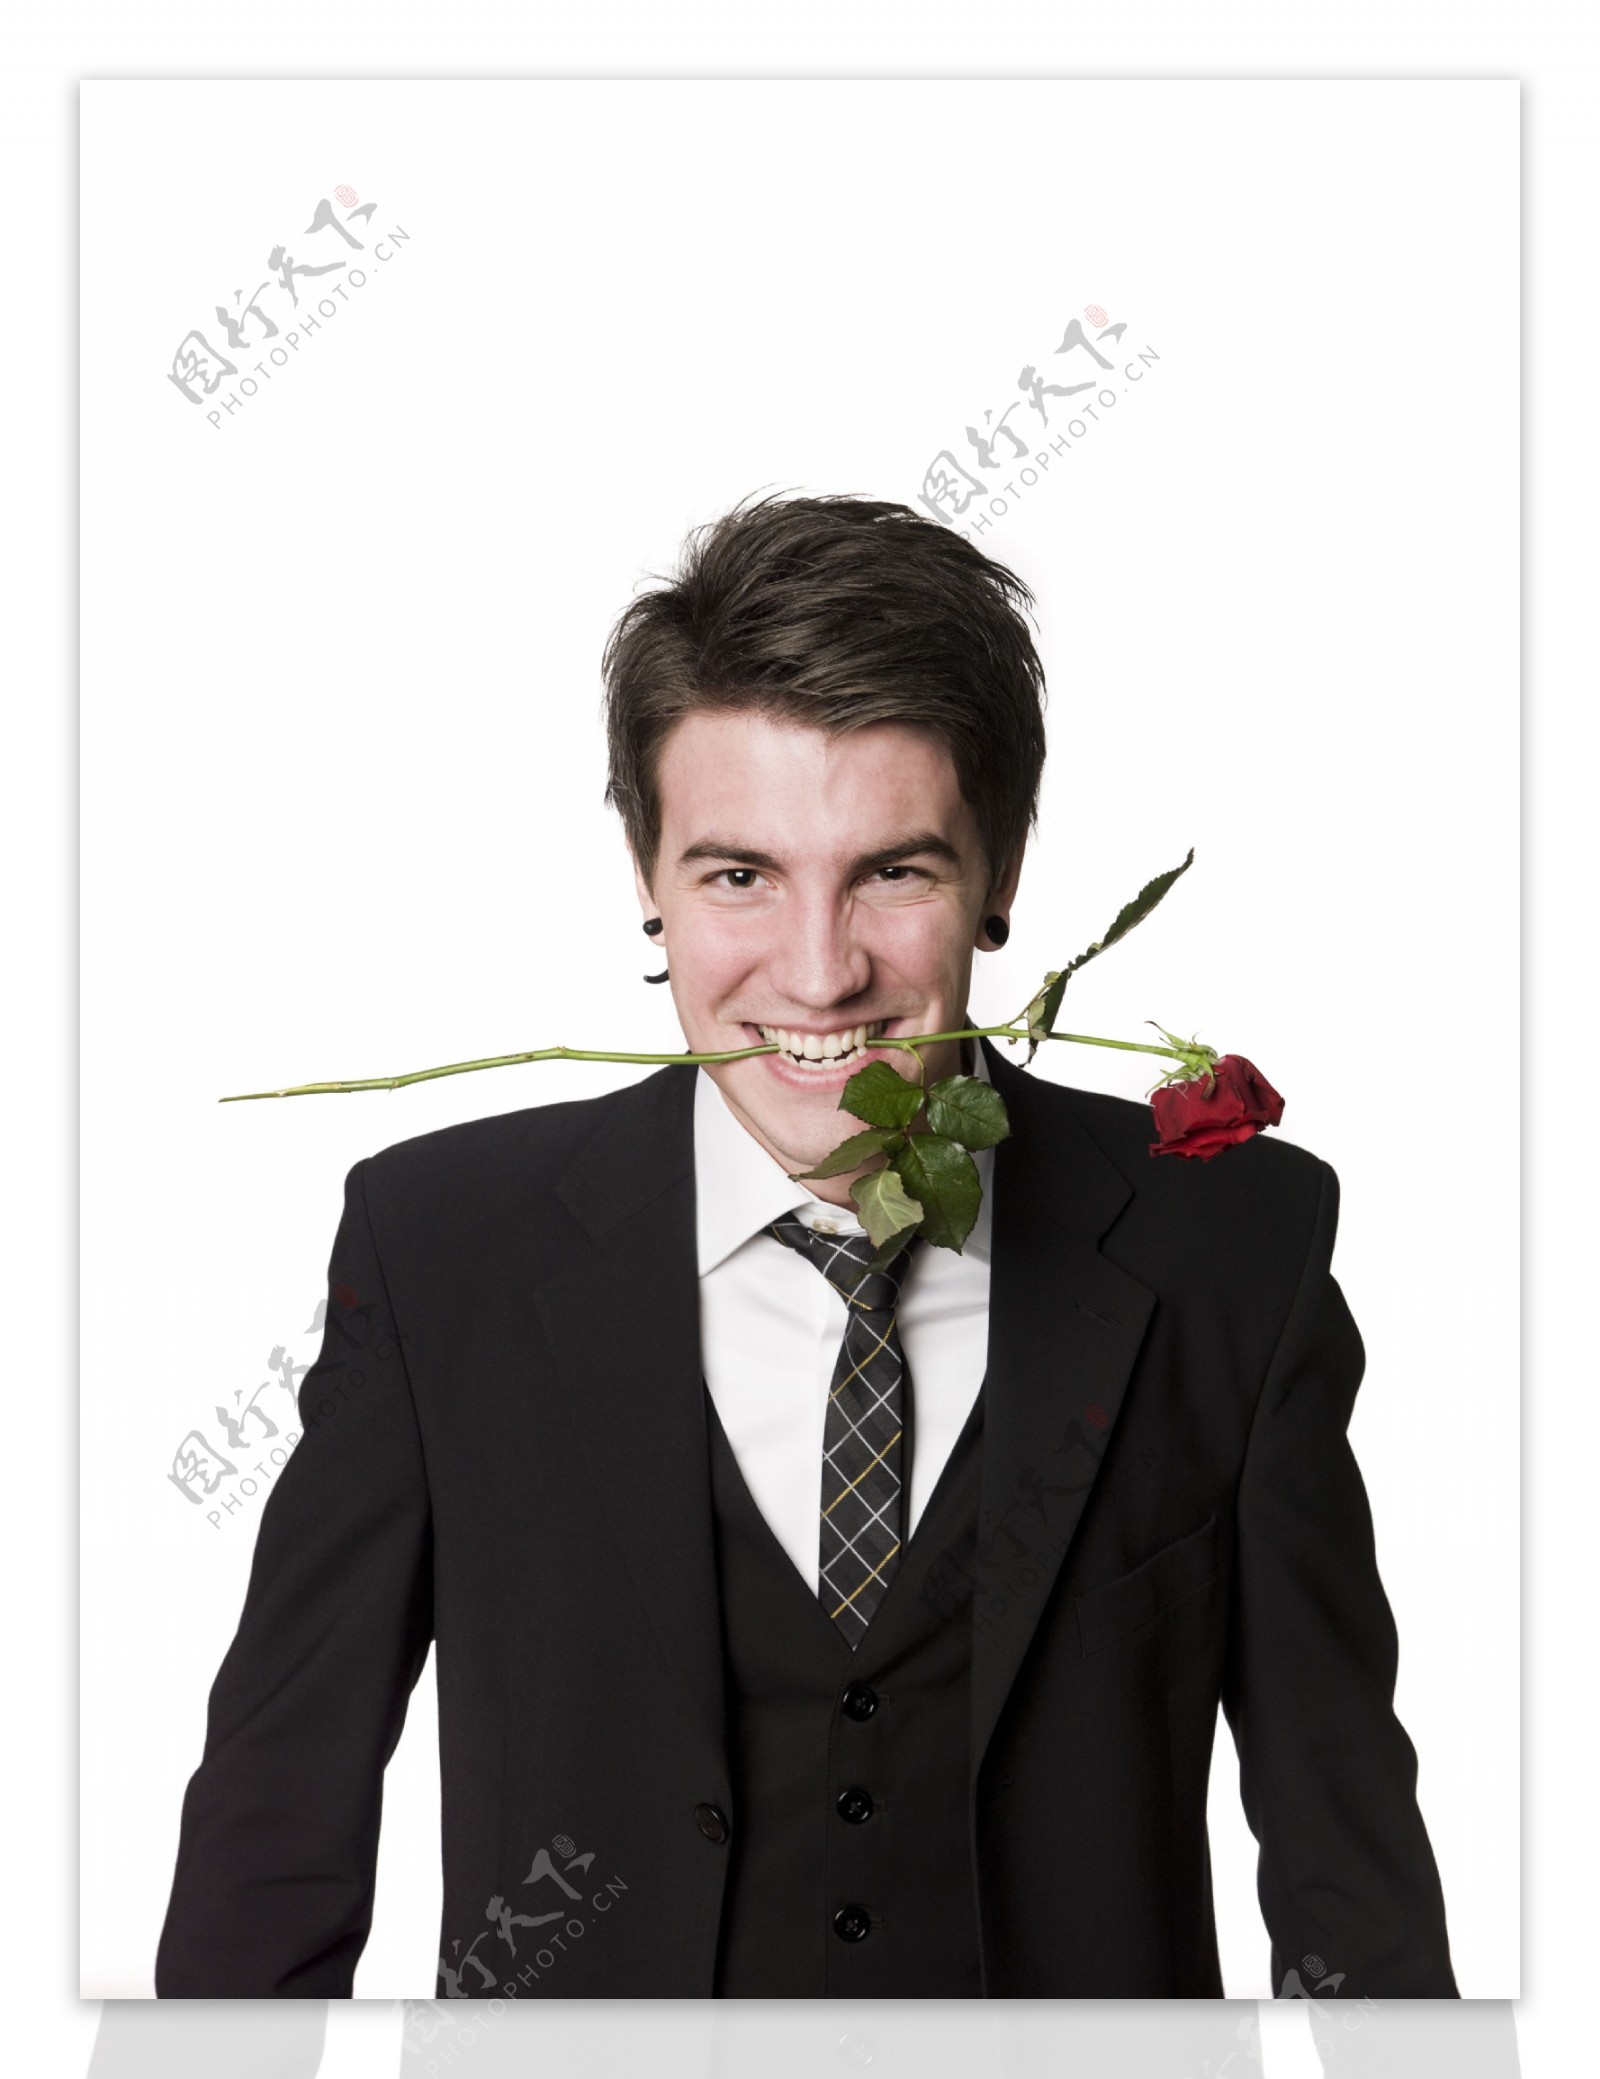 嘴叼玫瑰花的帅气男人图片